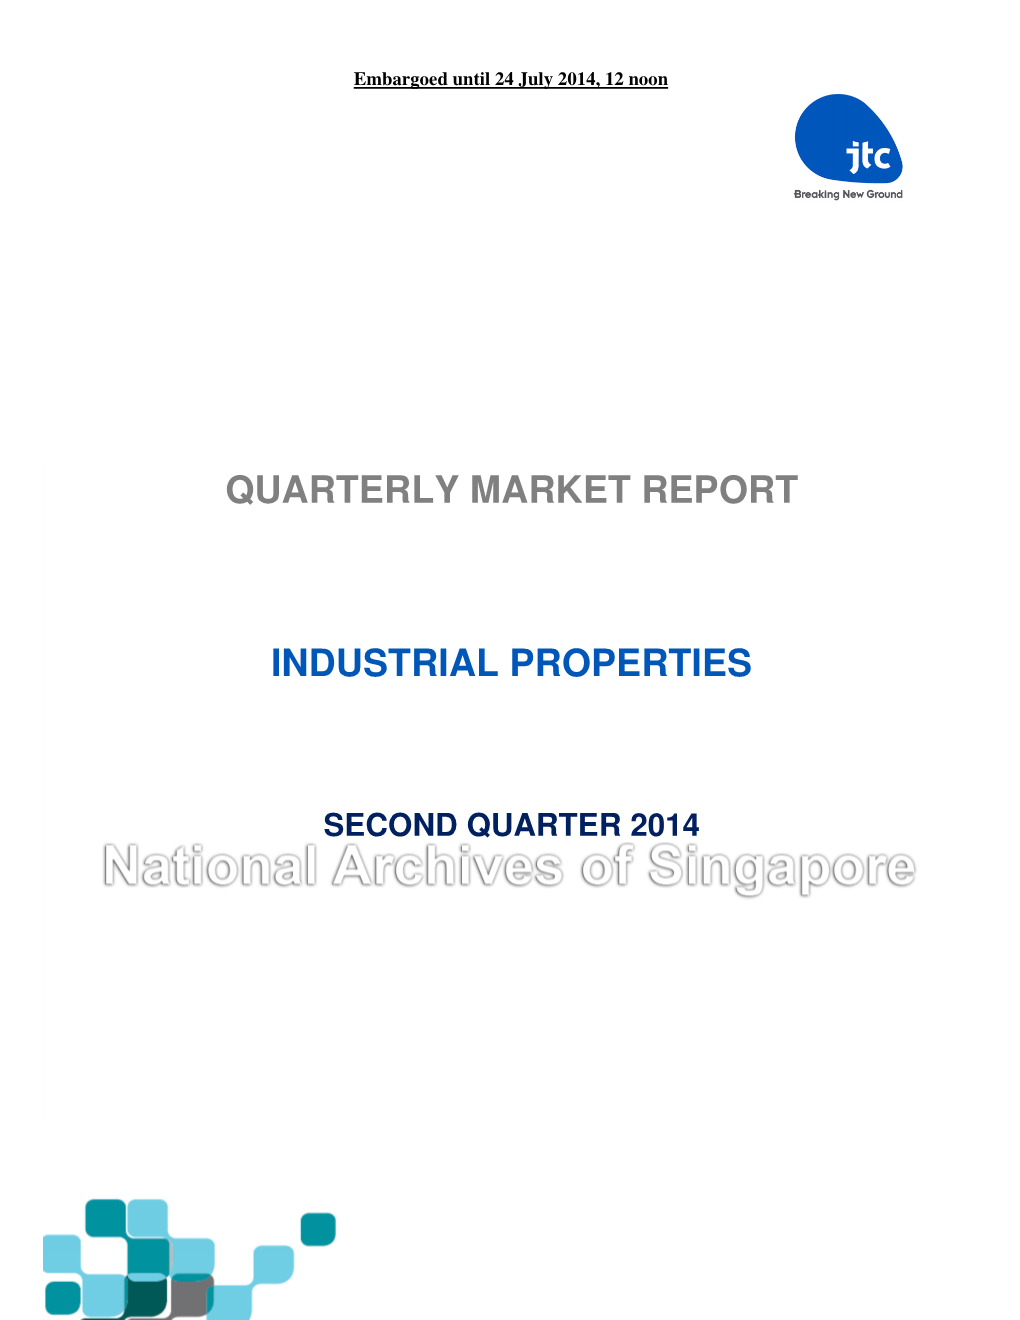 Quarterly Market Report Industrial Properties